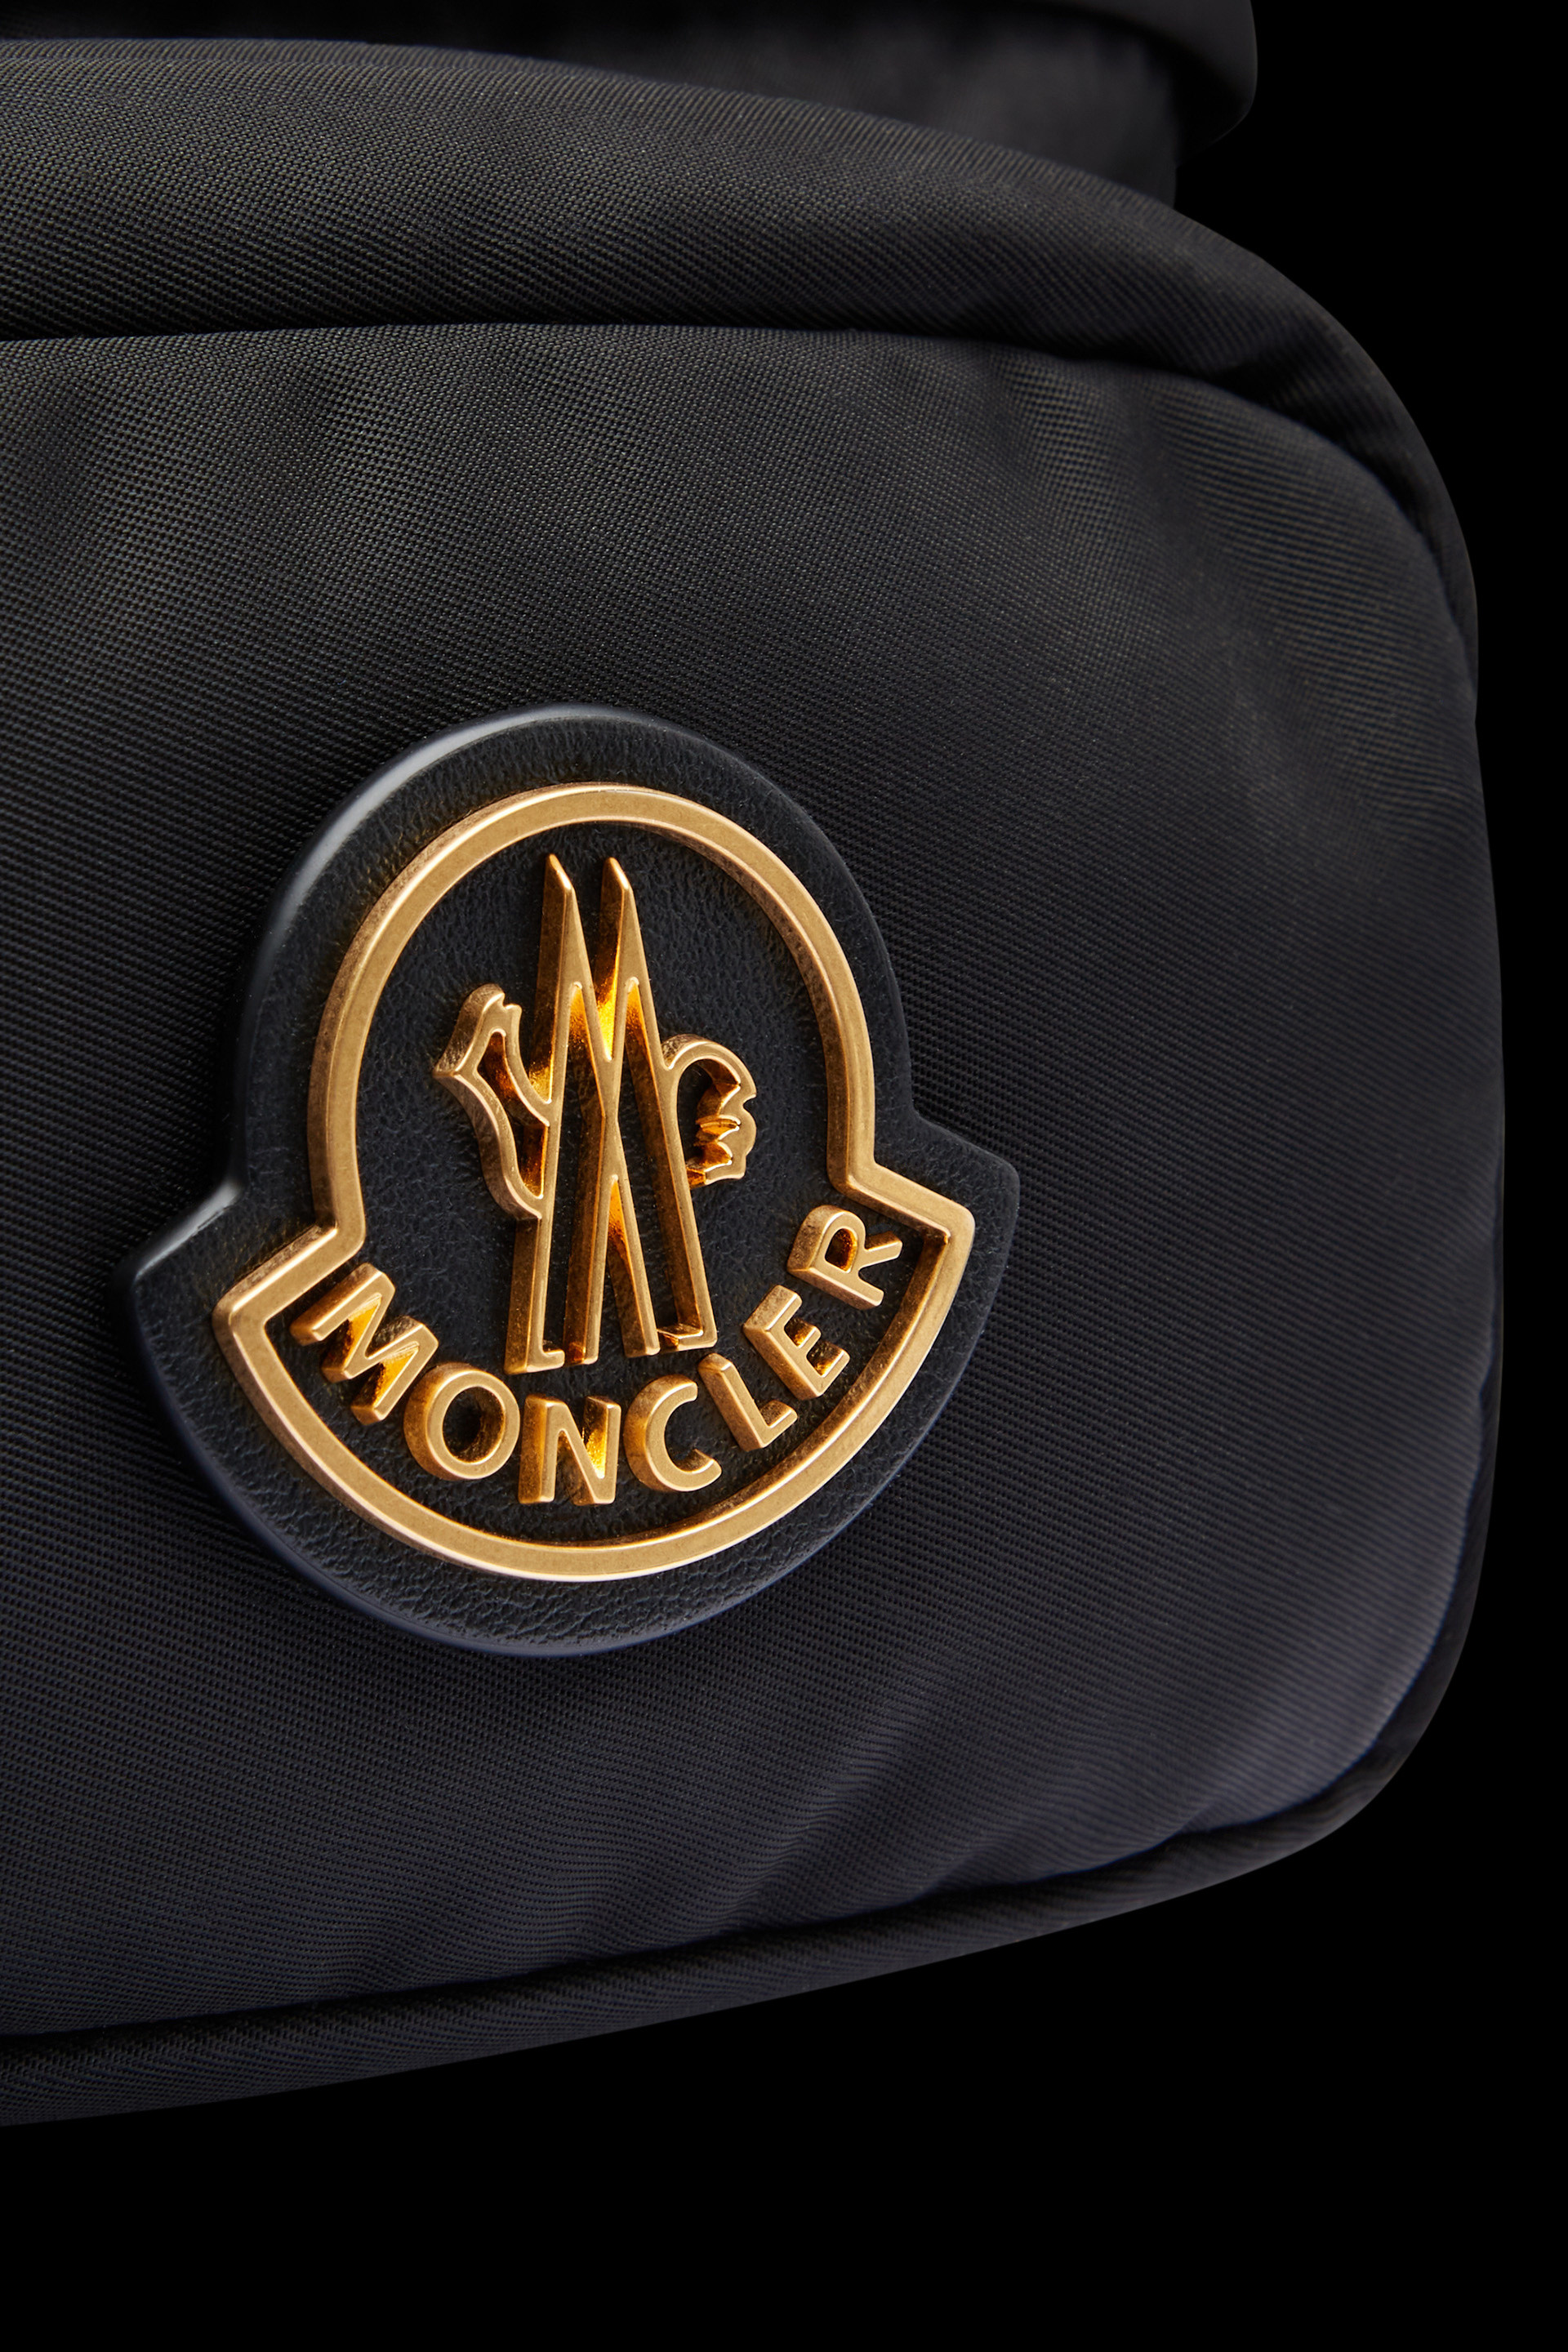 Felicie logo-patch belt bag, Moncler